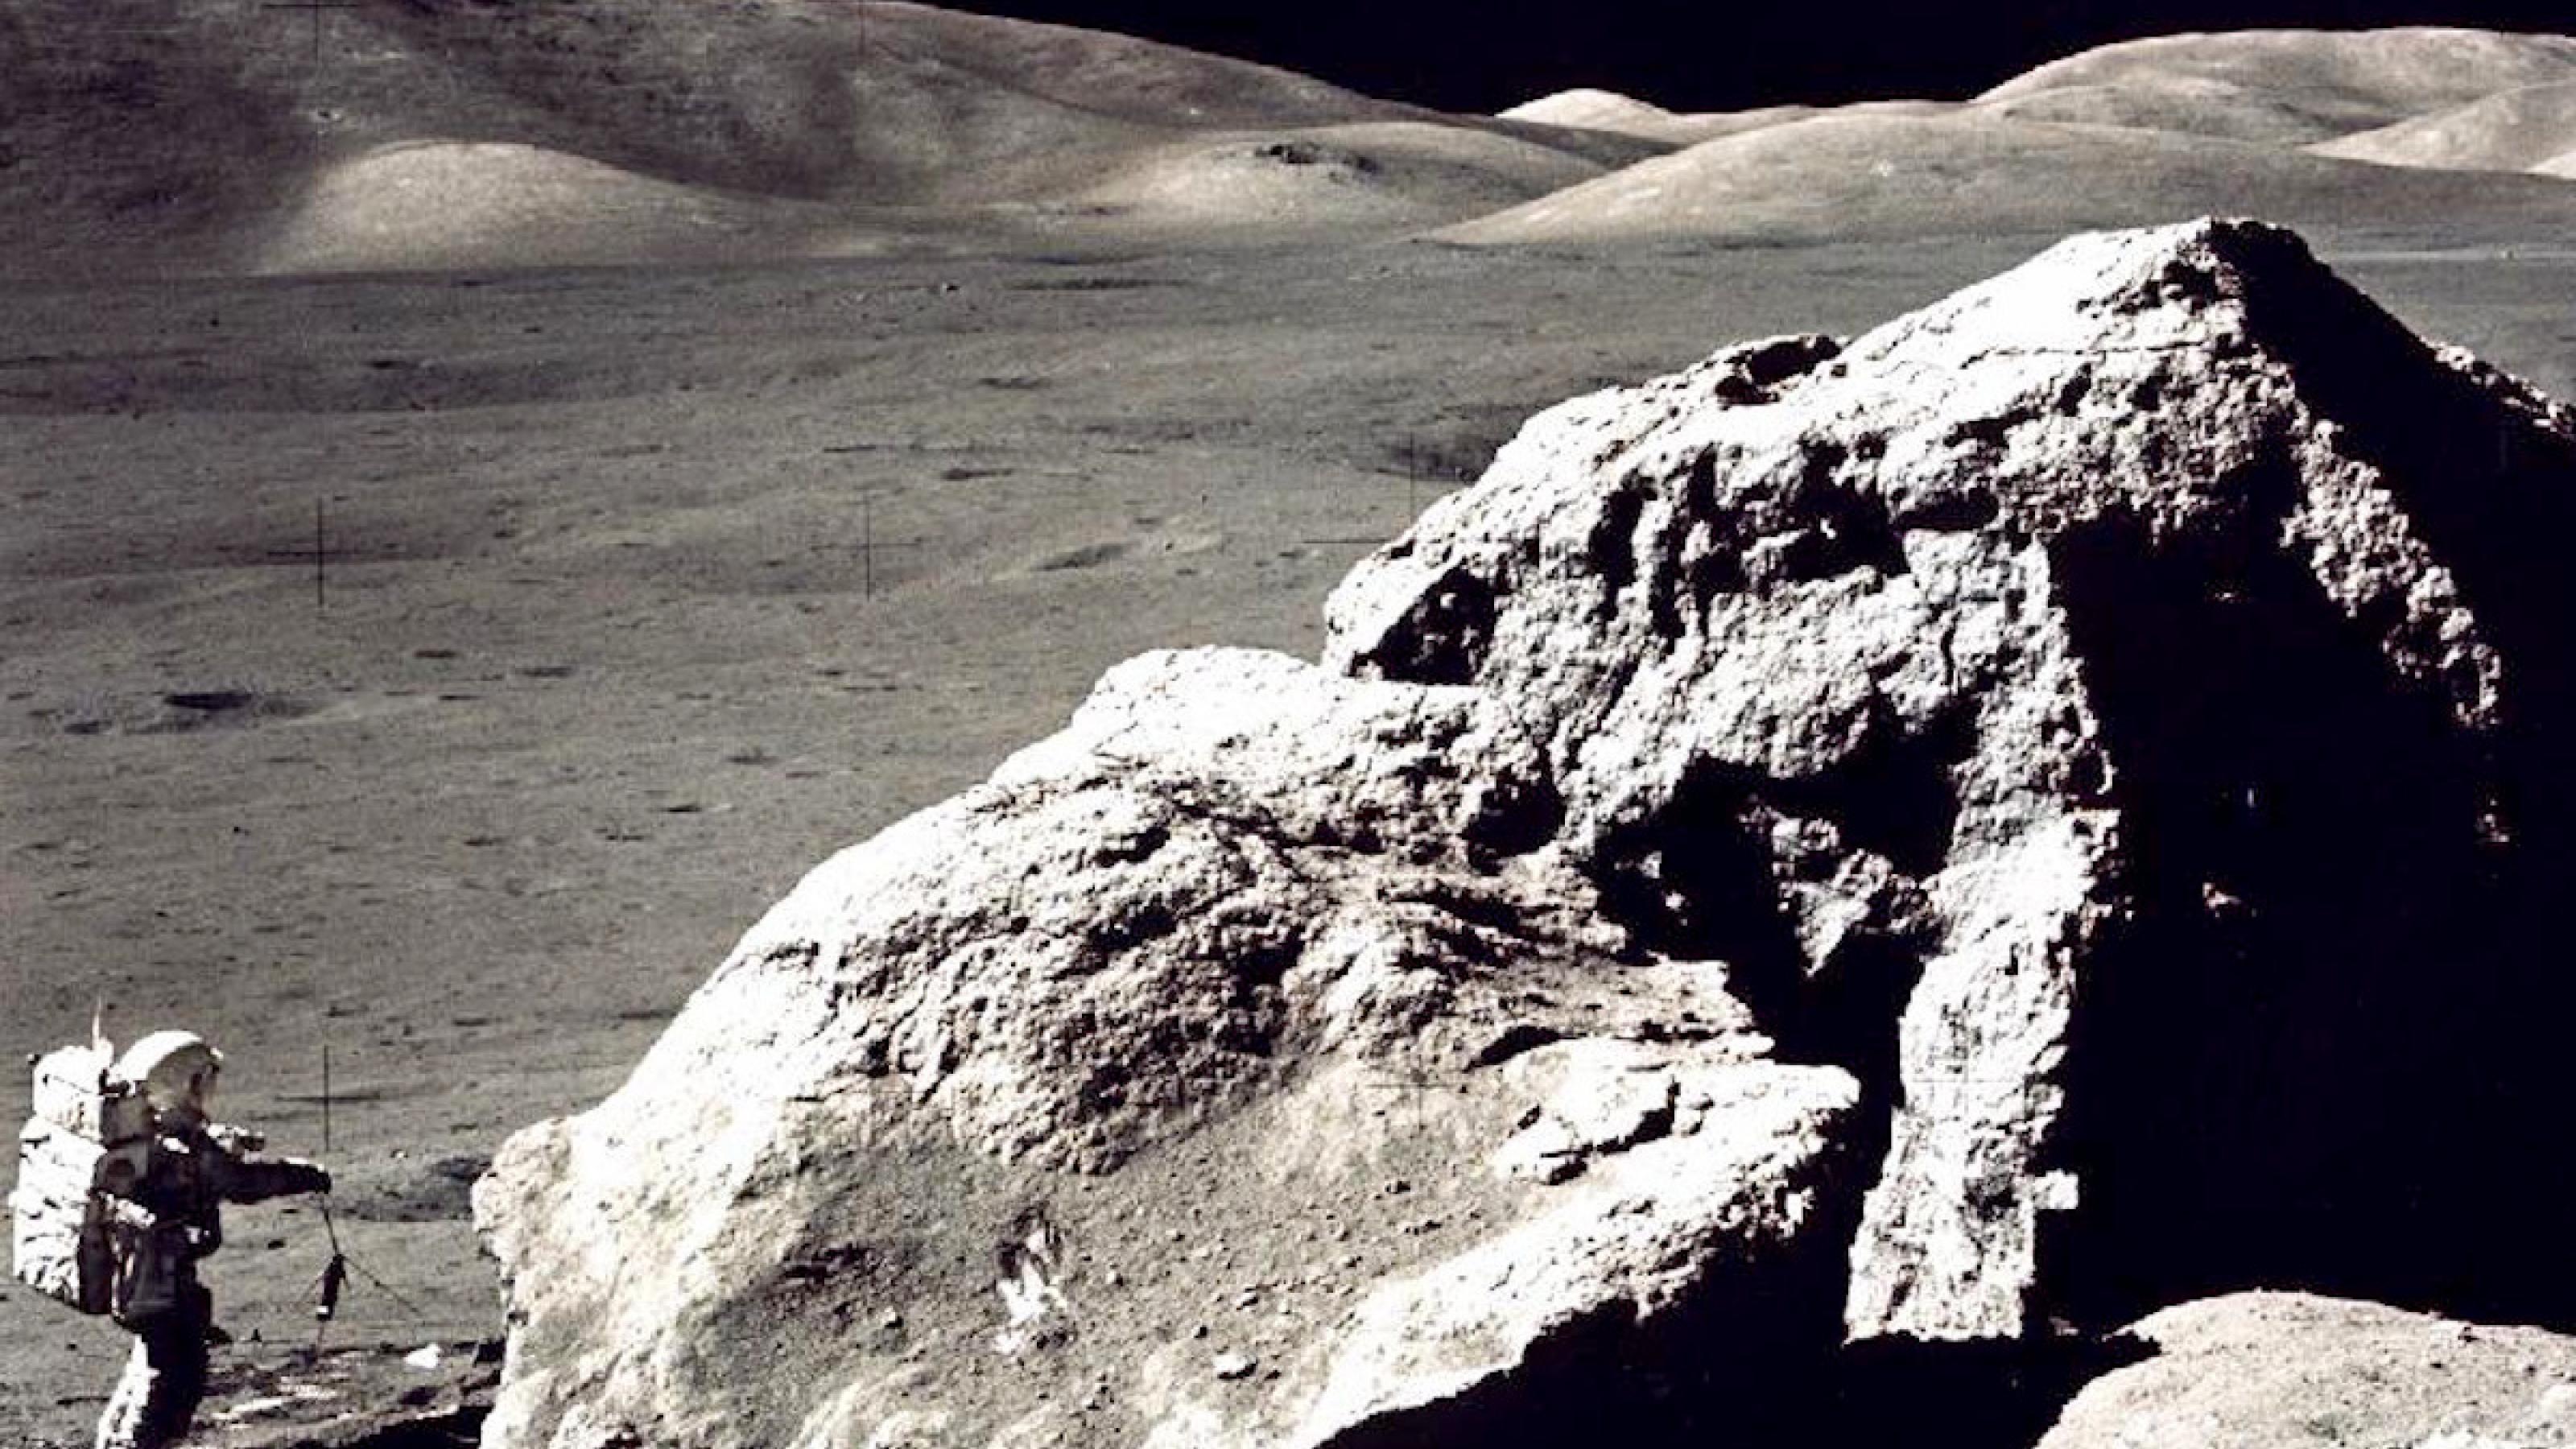 Auf dem Mond: ein hausgroßer Fels, daneben ein Astronaut im Raumanzug